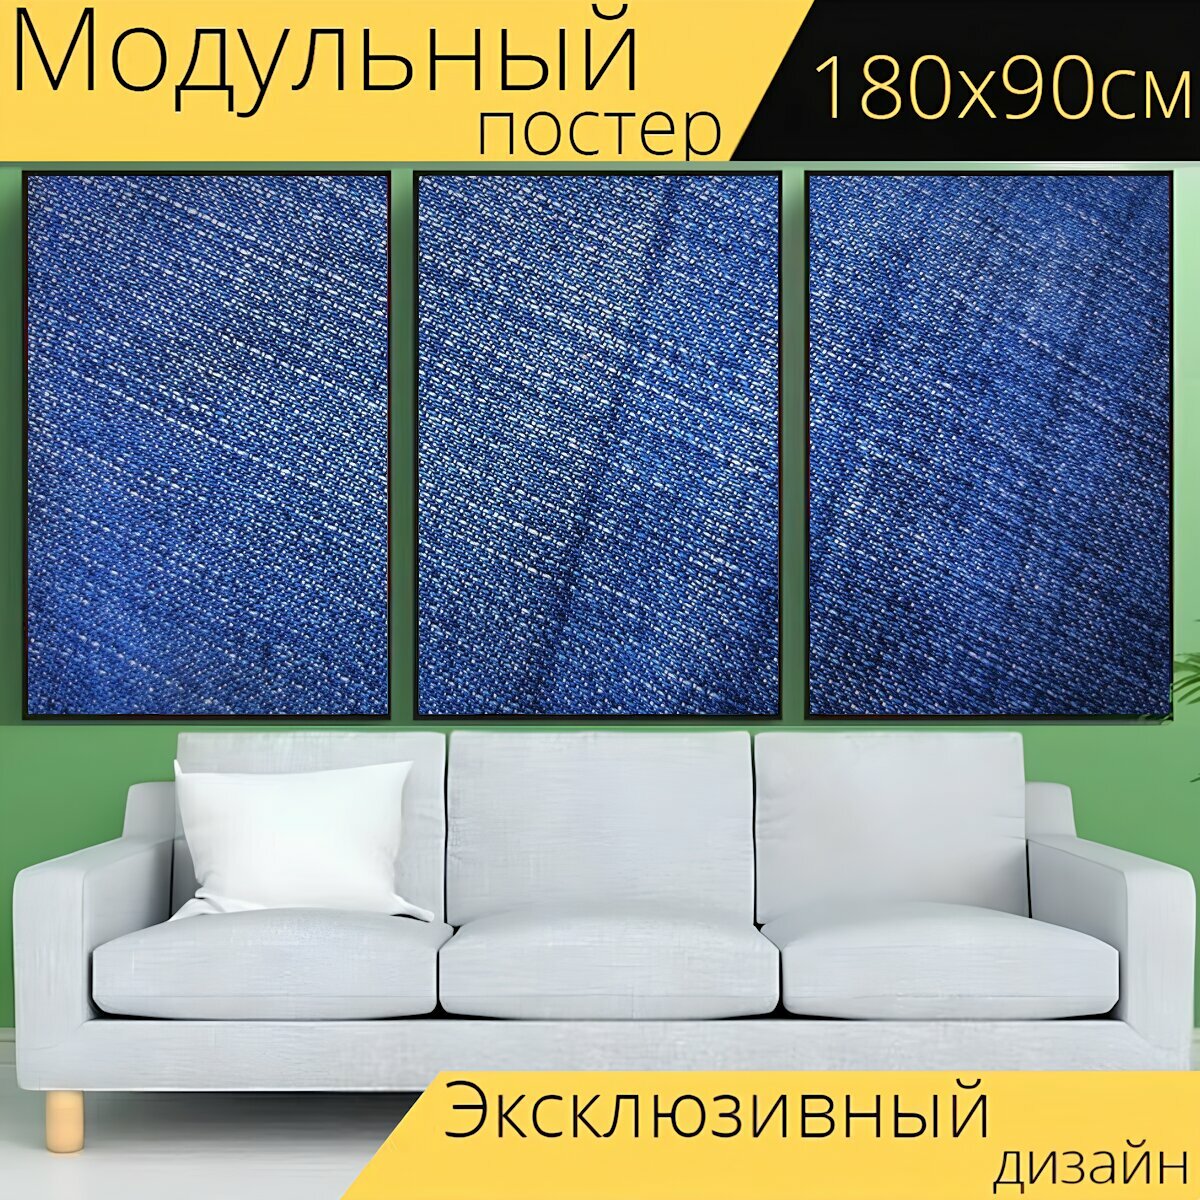 Модульный постер "Джинсы, шаблон джинсы, джинсовые" 180 x 90 см. для интерьера